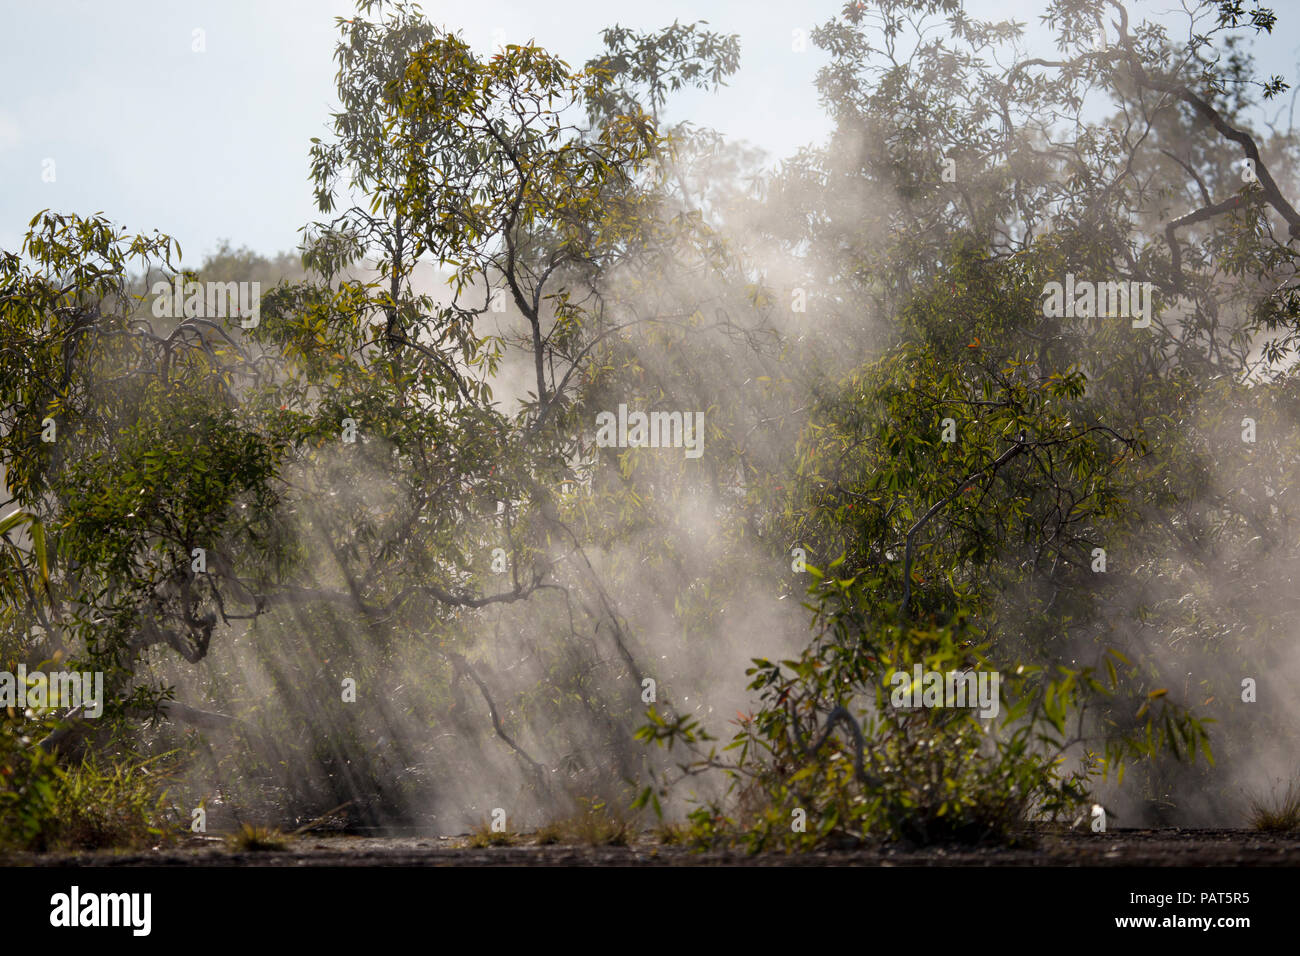 Papua Neu Guinea, Dei Dei heißen Quellen, Fergusson Island. Dampf steigt durch Bäume aus heißen Quellen. Stockfoto